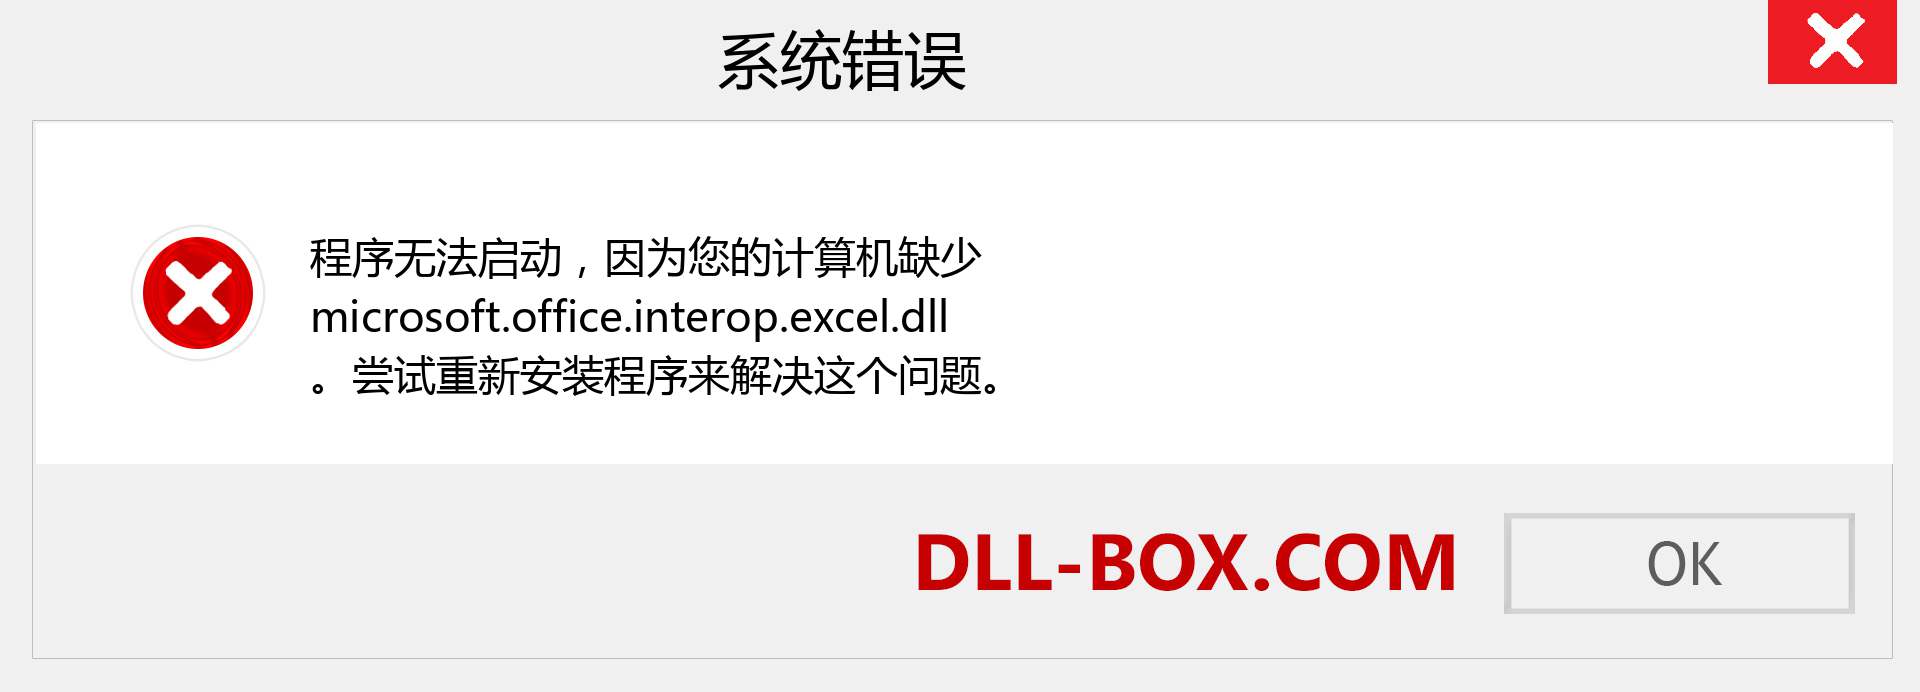 microsoft.office.interop.excel.dll 文件丢失？。 适用于 Windows 7、8、10 的下载 - 修复 Windows、照片、图像上的 microsoft.office.interop.excel dll 丢失错误